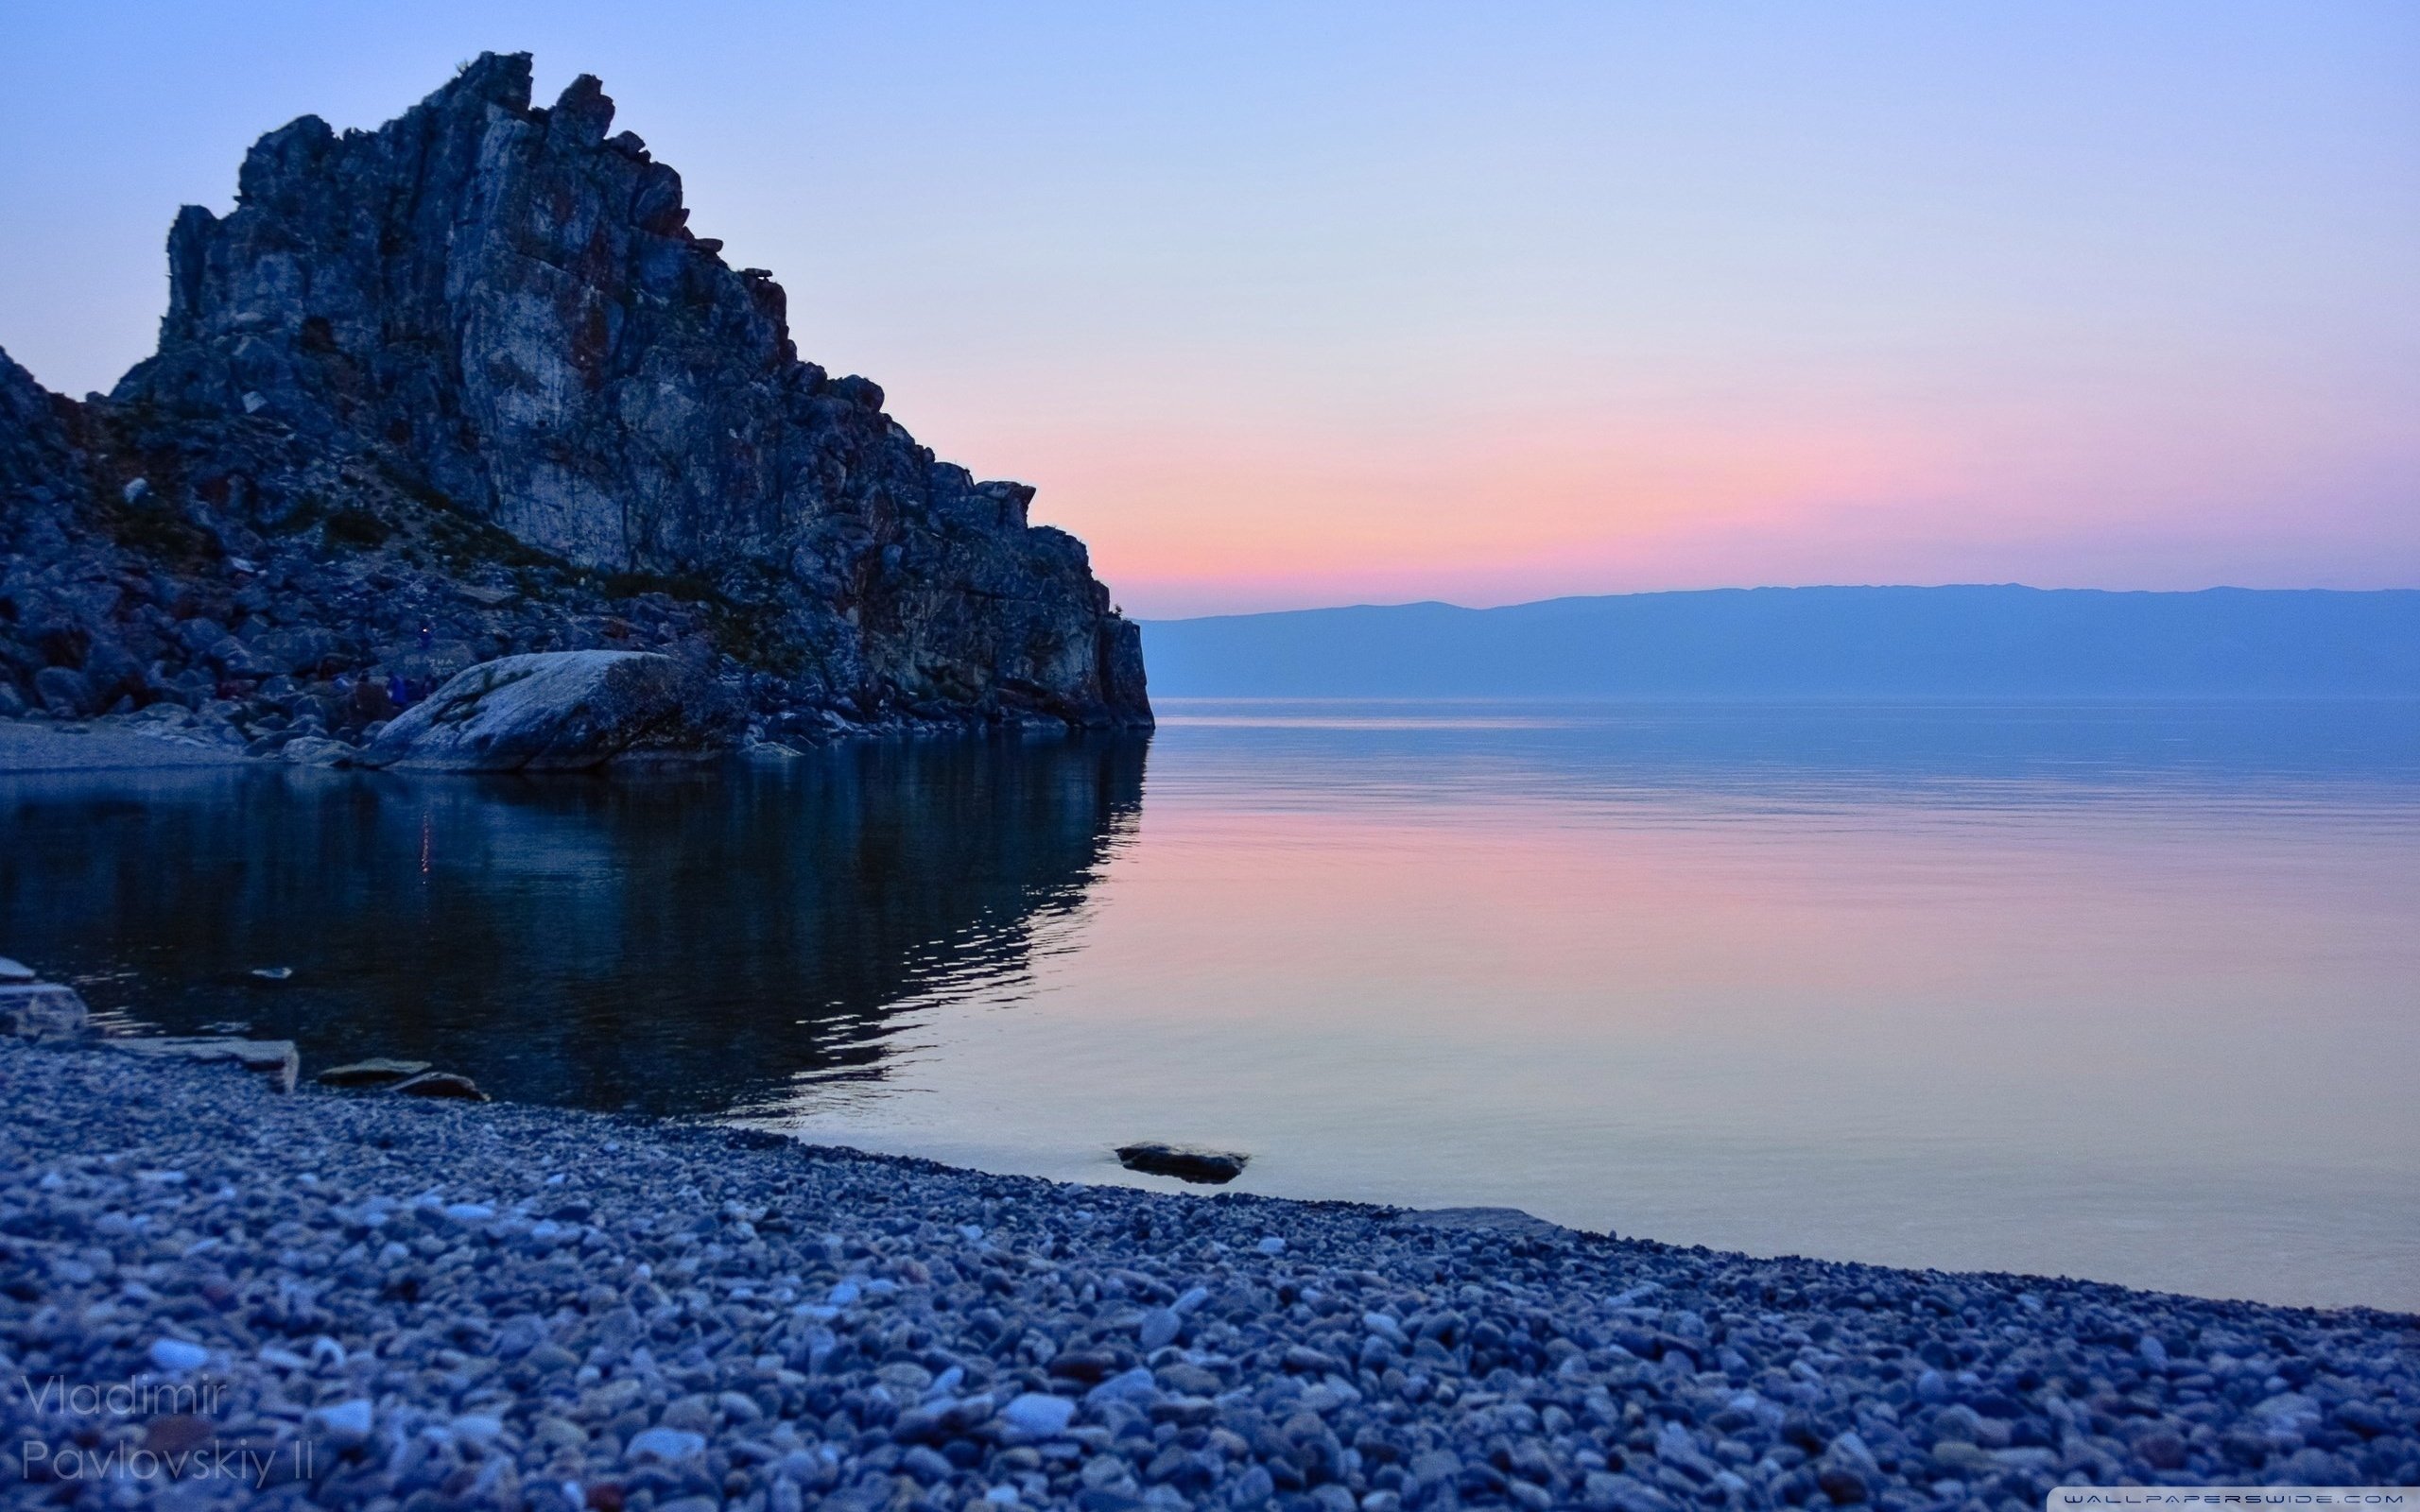 Восточно сибирское озеро. Ольхон Байкал. Восточная Сибирь Байкал. Природа Байкала. Lake Baikal, Irkutsk Region.